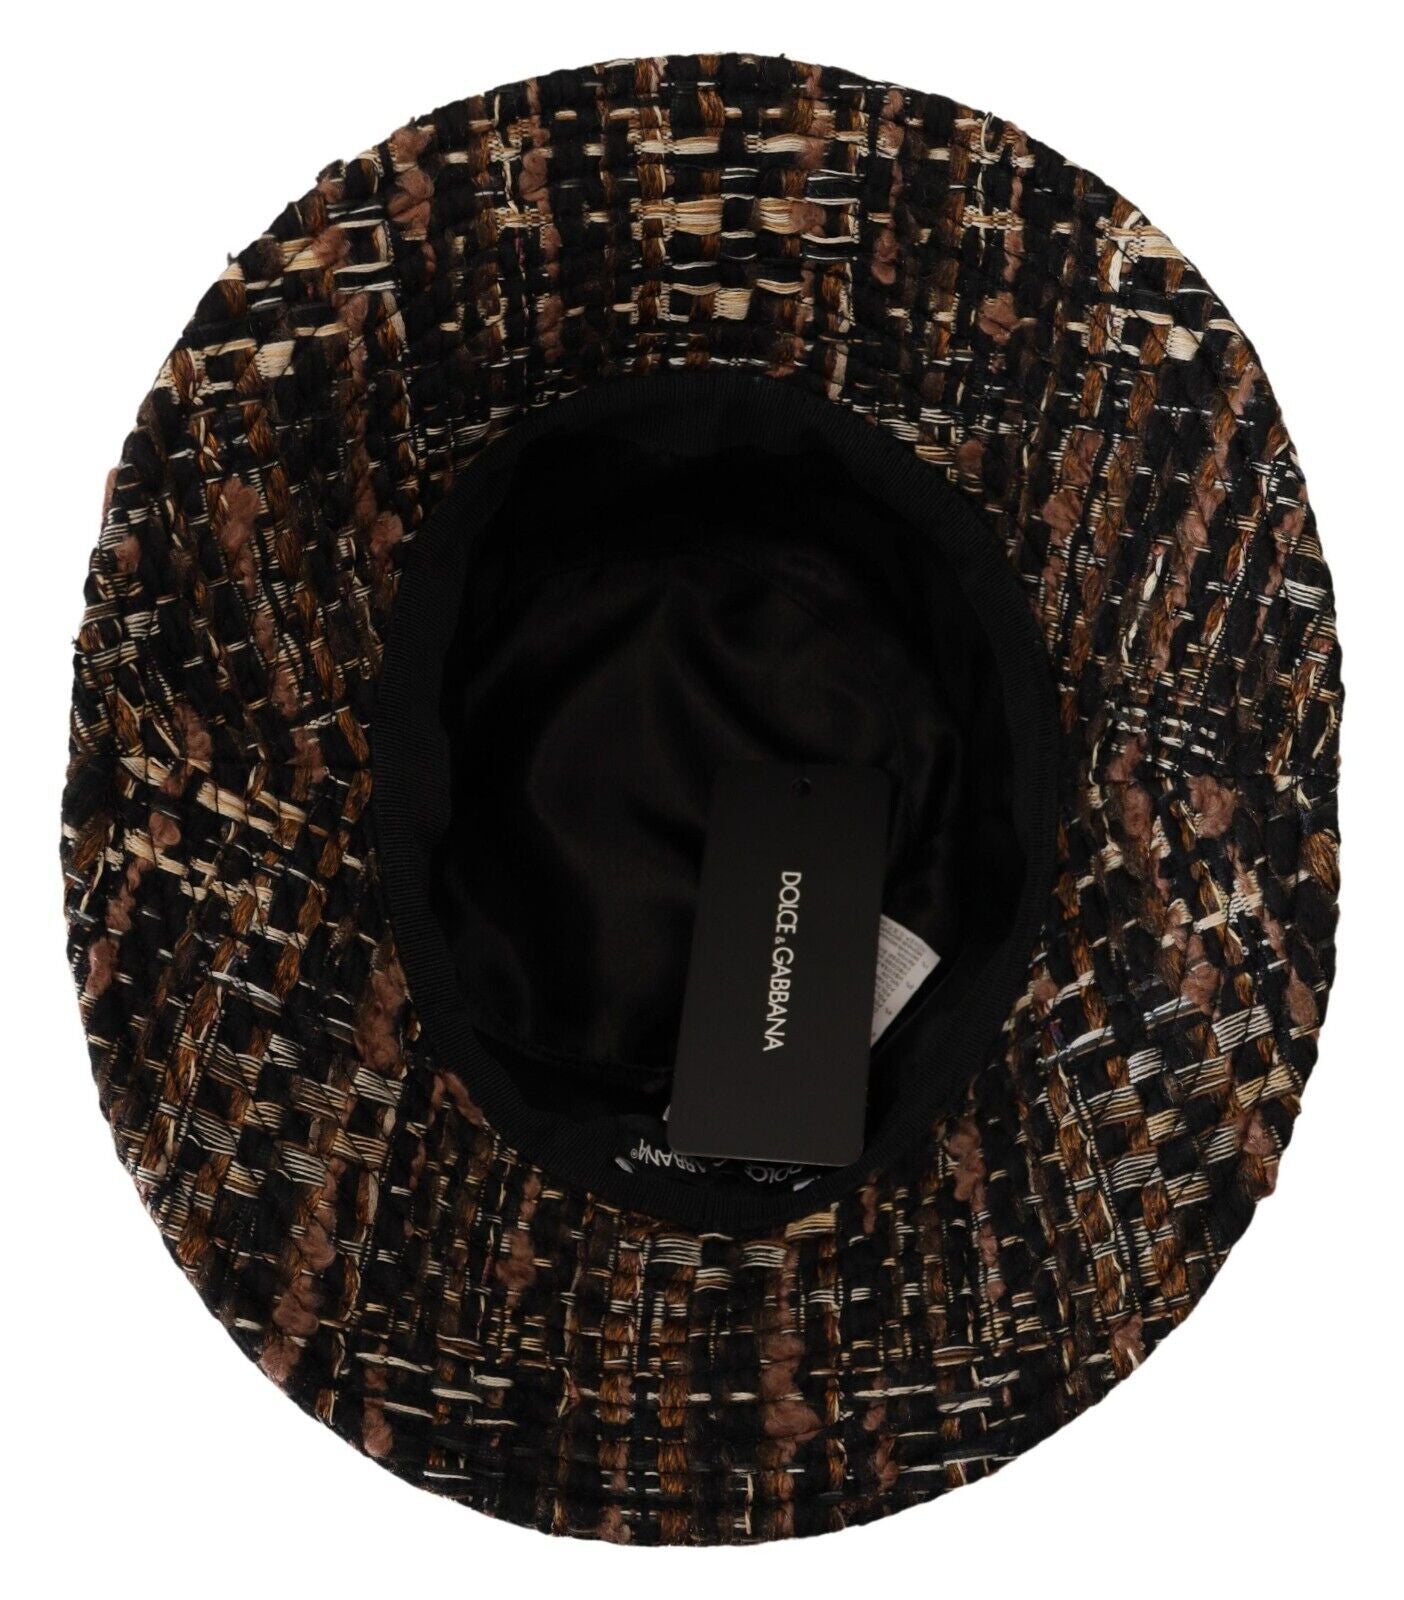 Elegant Fedora Hat in Rich Brown Hue